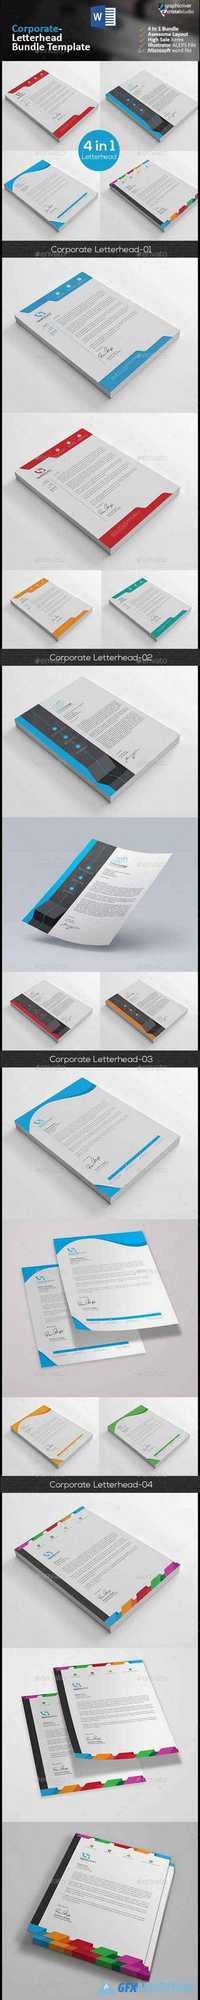 GraphicRiver - Letterhead Bundle 4 in 1 13210658